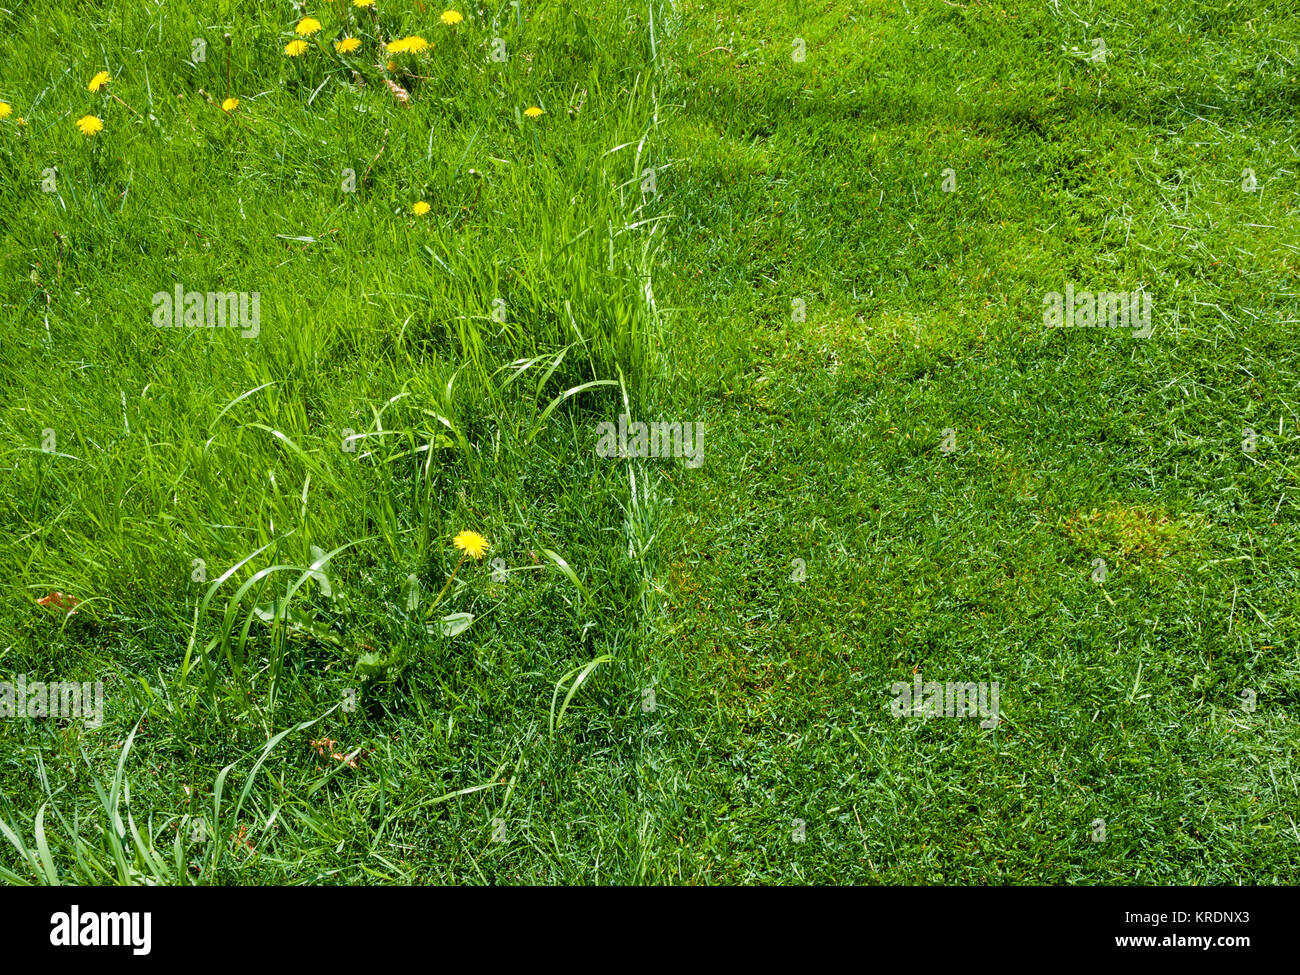 Dettaglio della metà del verde erba falciata. Foto Stock